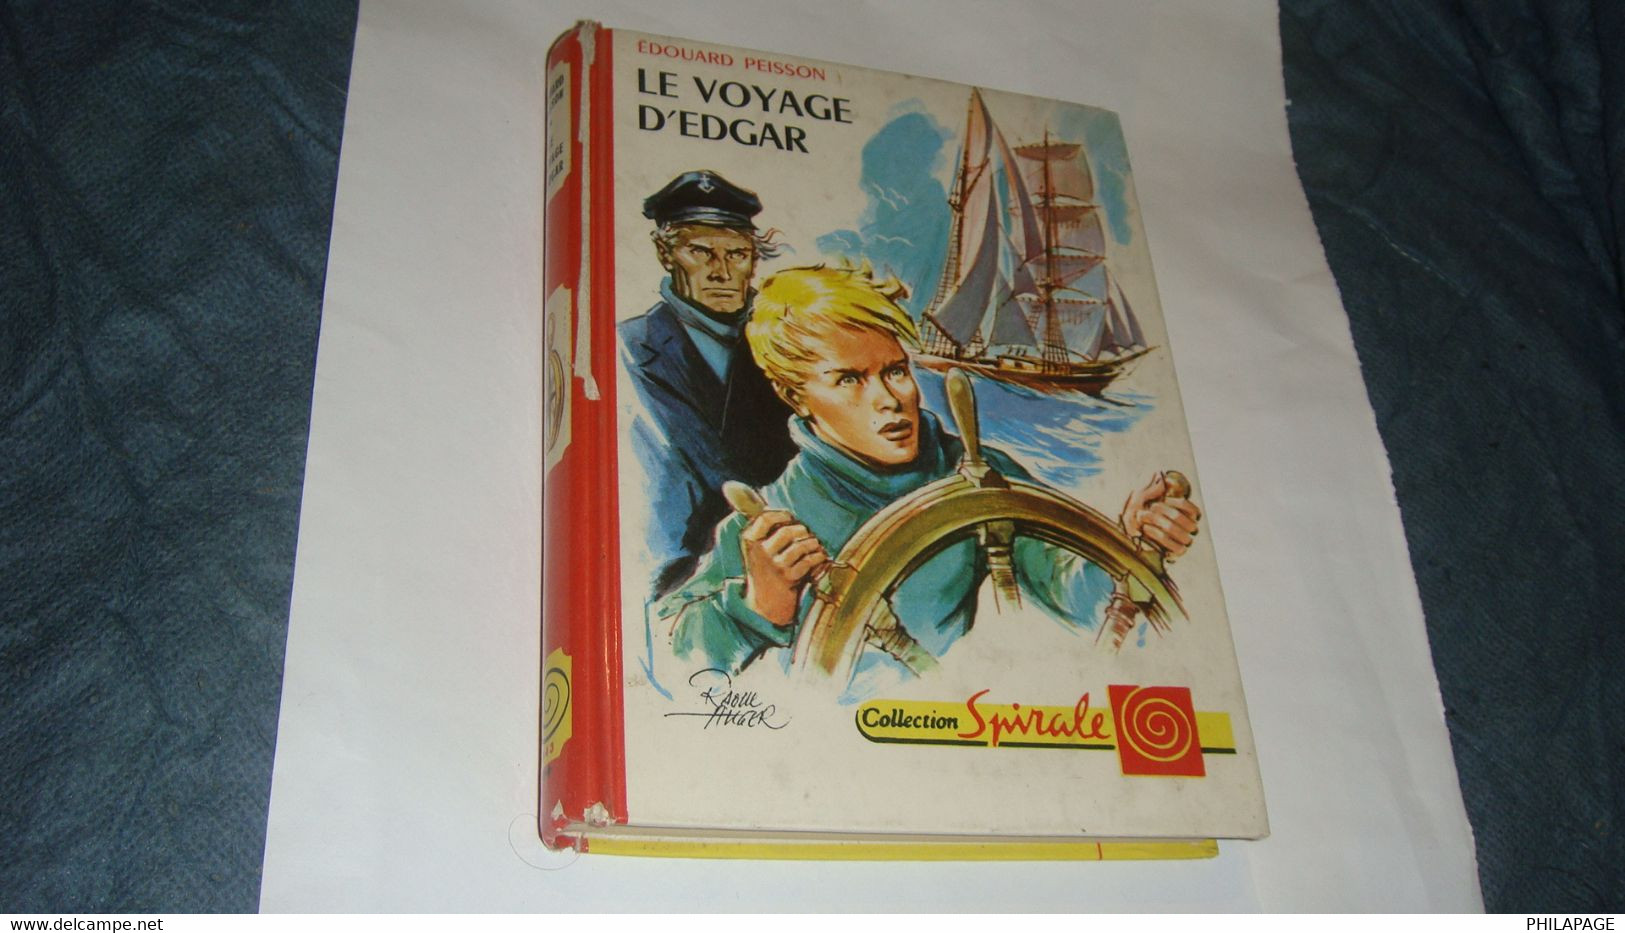 Le Voyage D'Edgar De Edouard Peisson - Collection Spirale